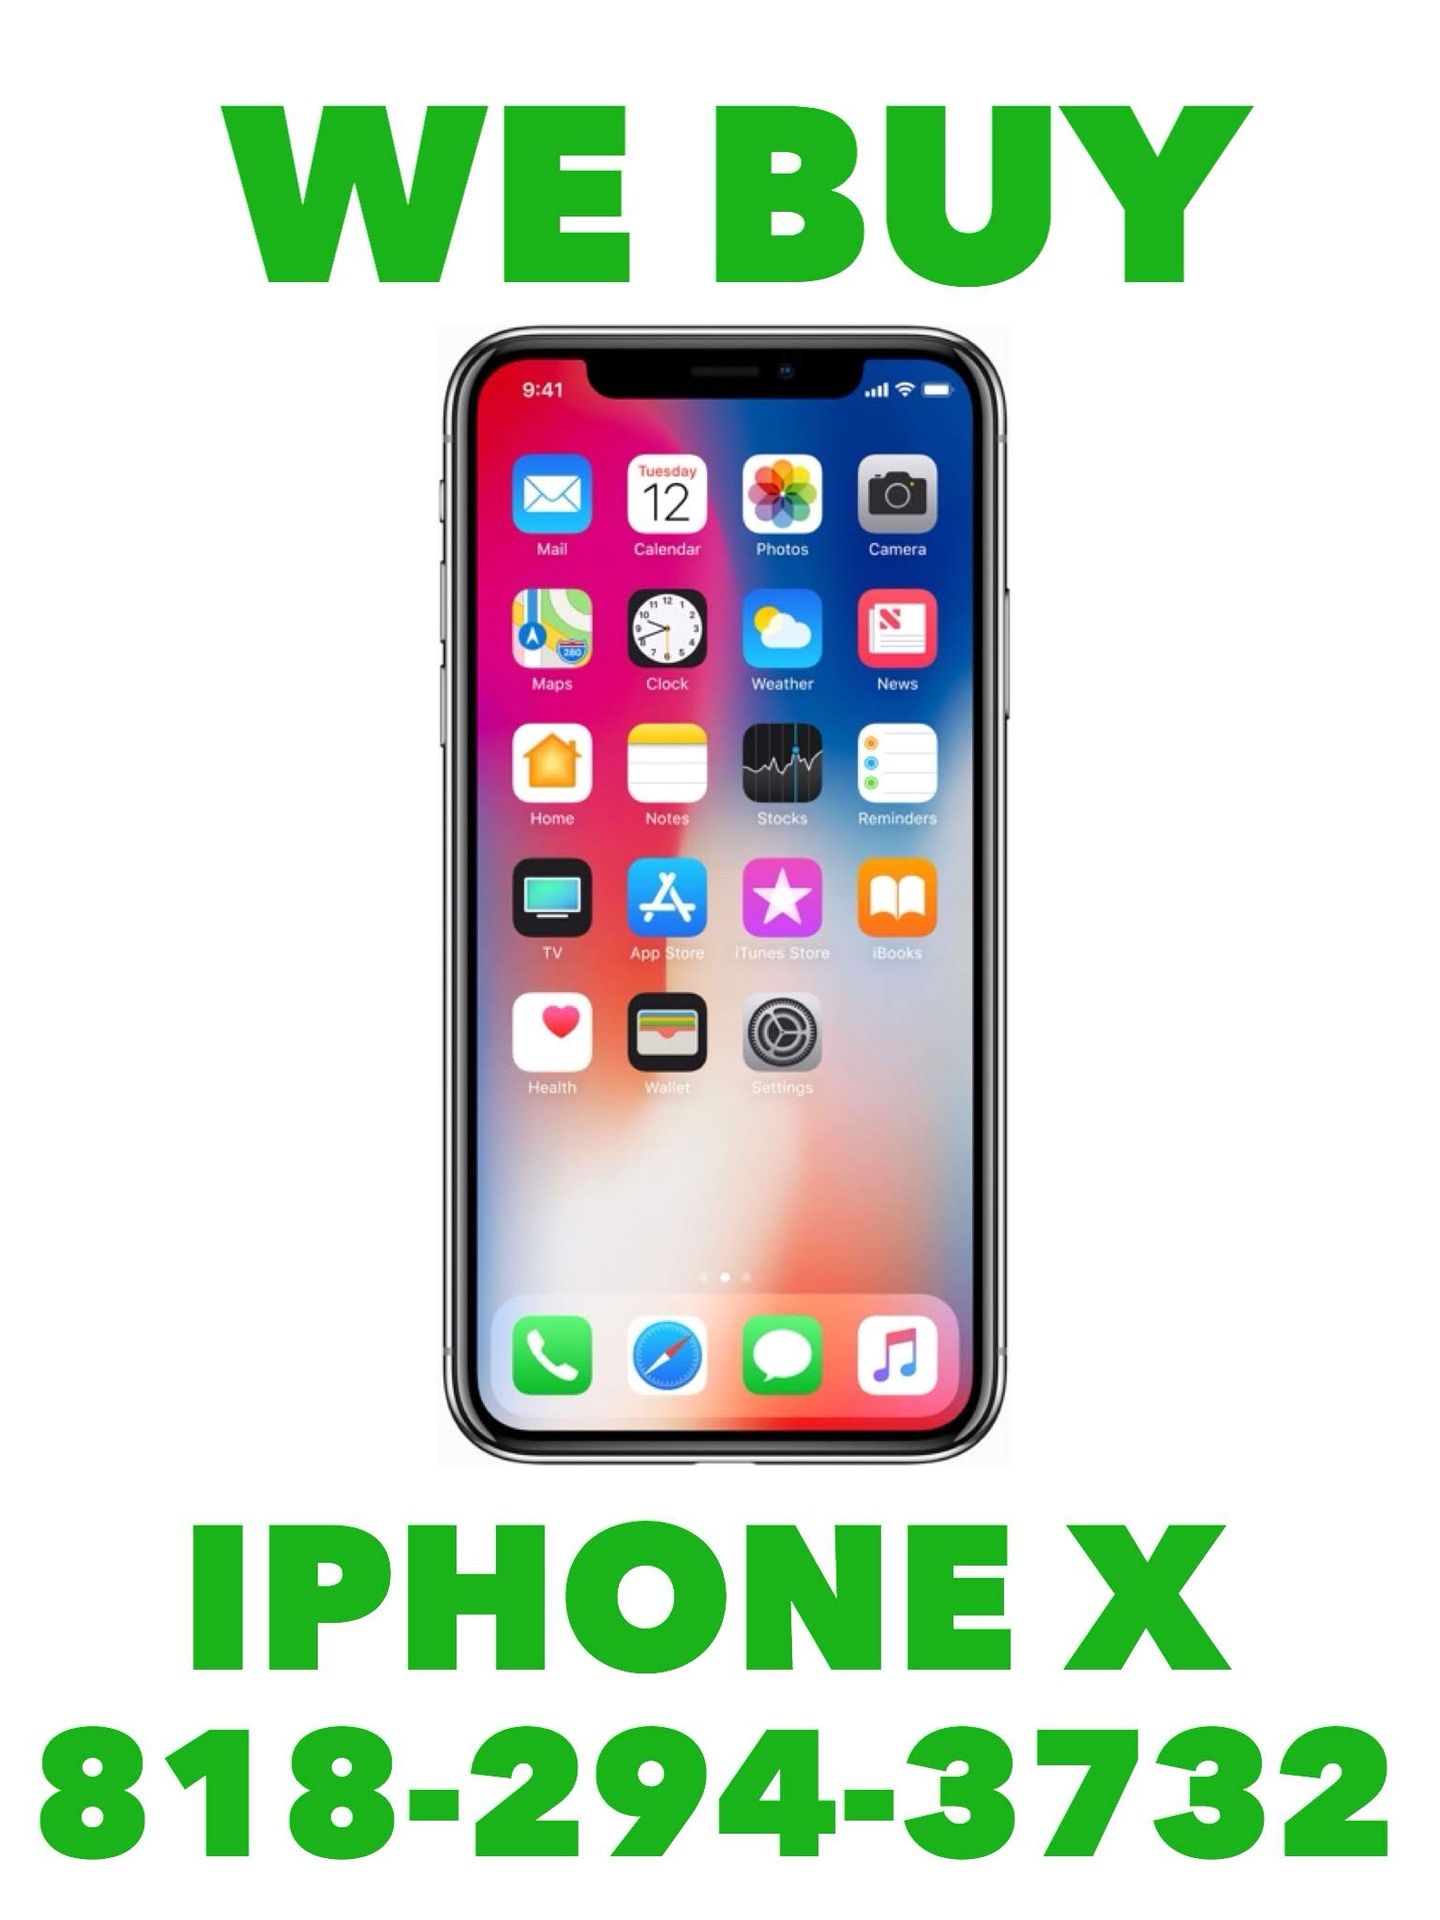 IPHONE X - IPHONE X - IPHONE X - IPHONE X - IPHONE X - IPHONE X -